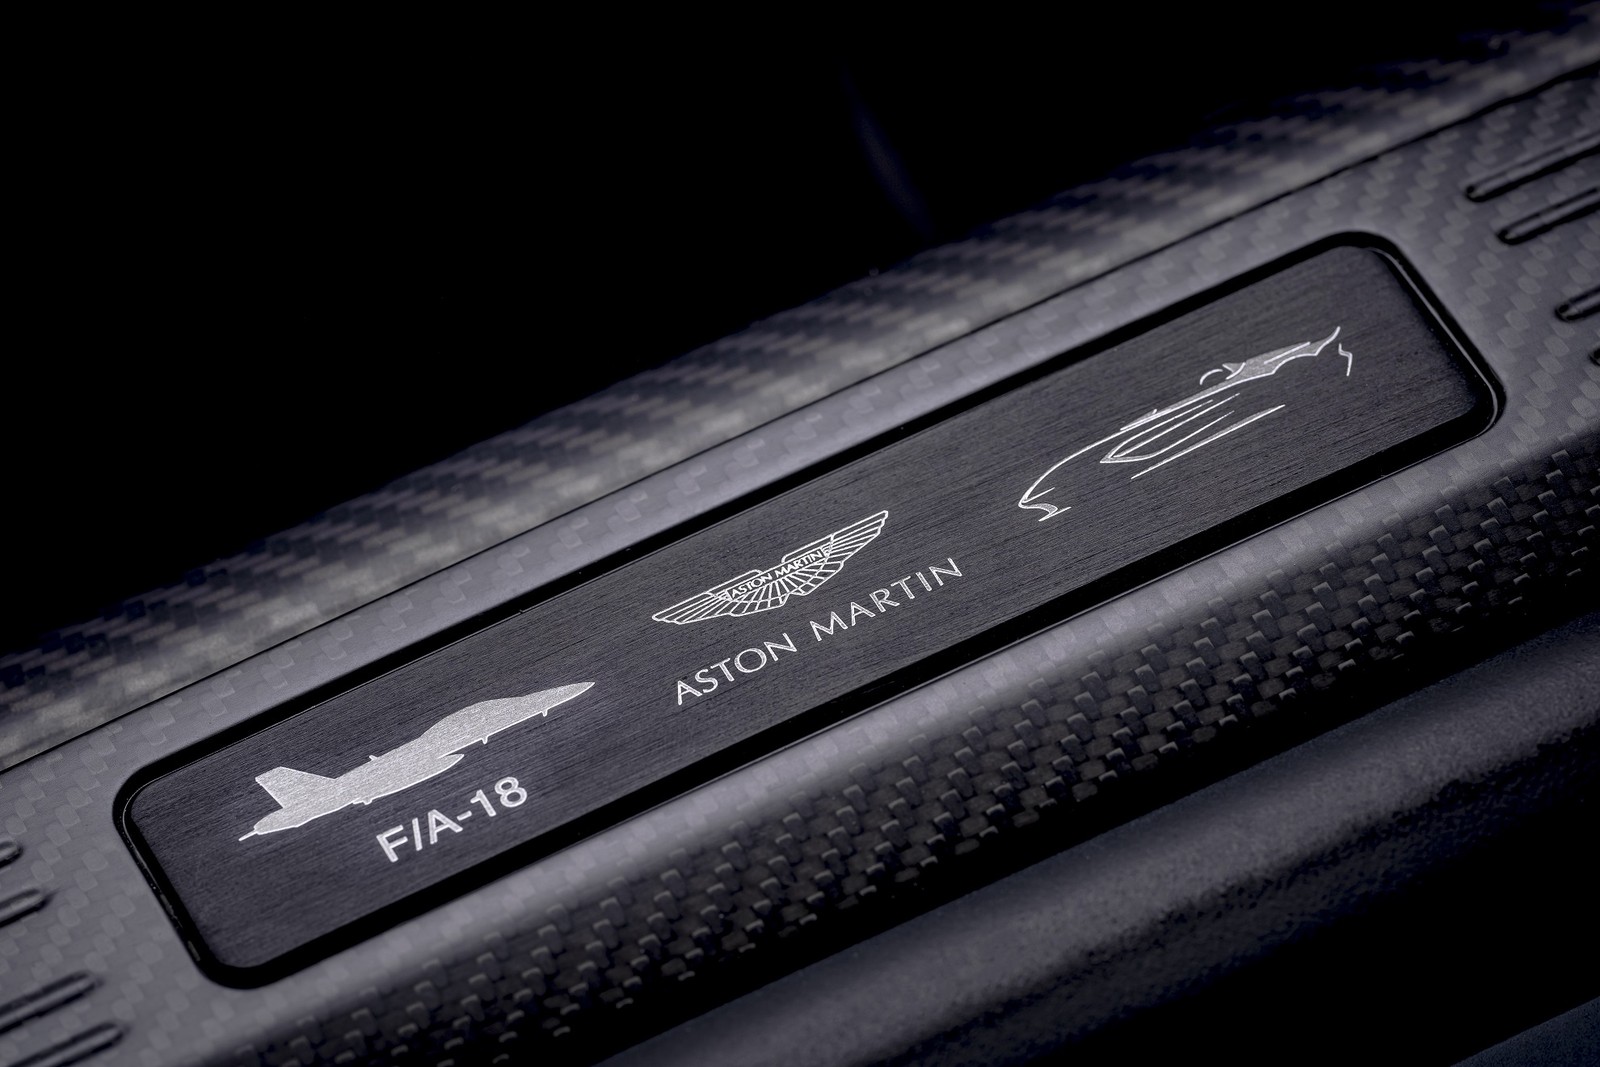 Aston Martin V12 Speedster 2020 — Foto: Divulgação